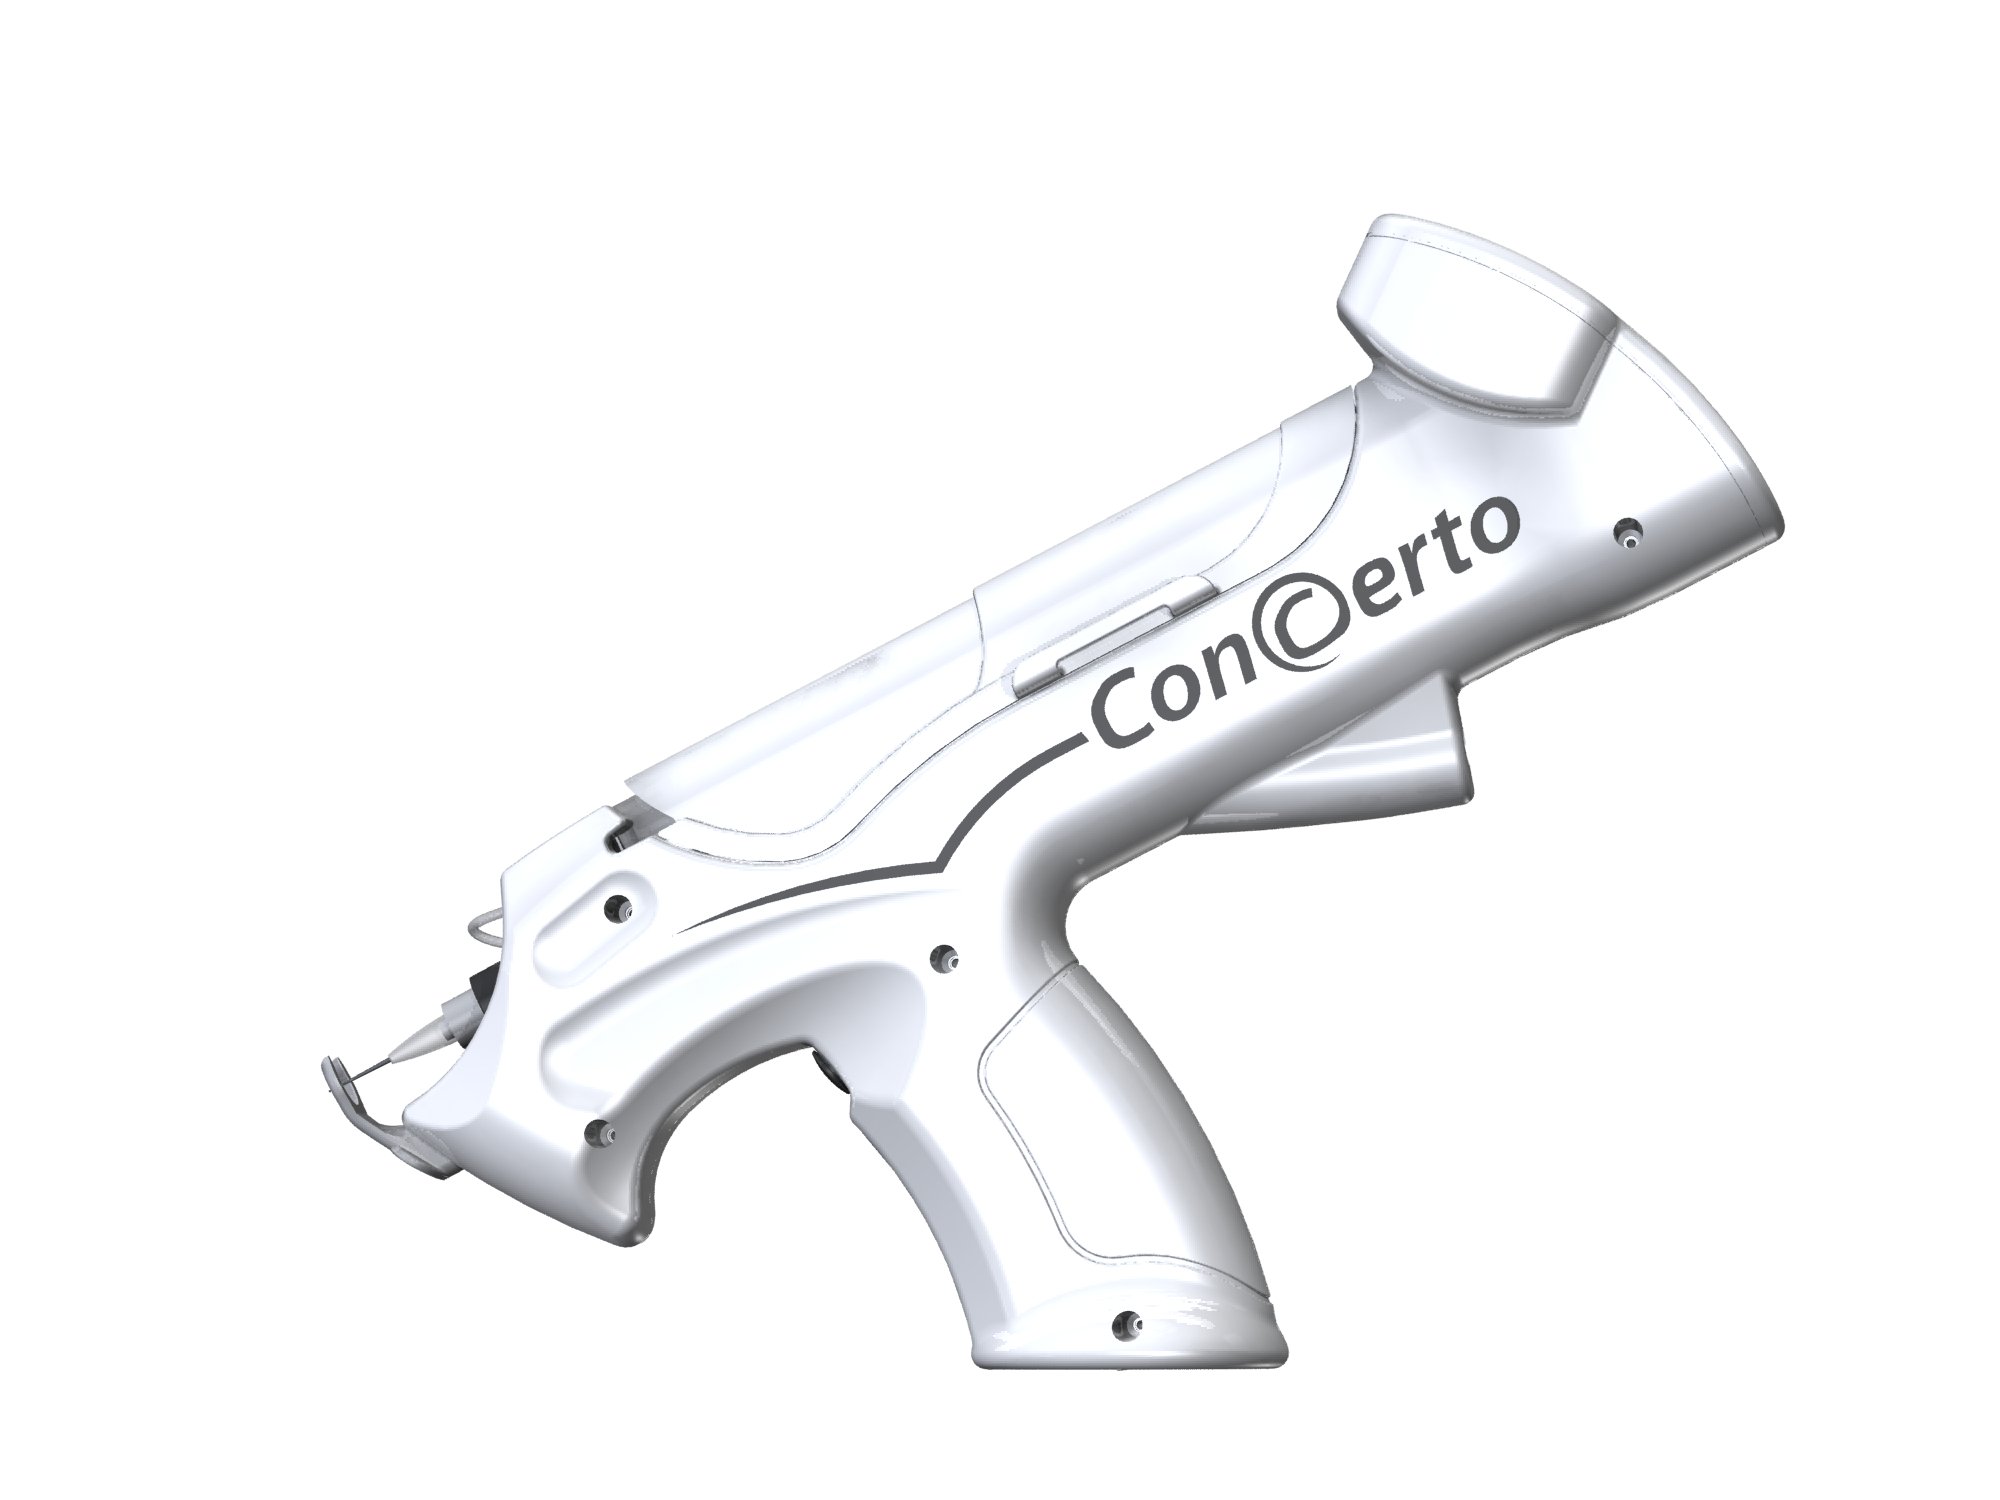 Pistola para mesoterapia y carboxiterapia Concerto